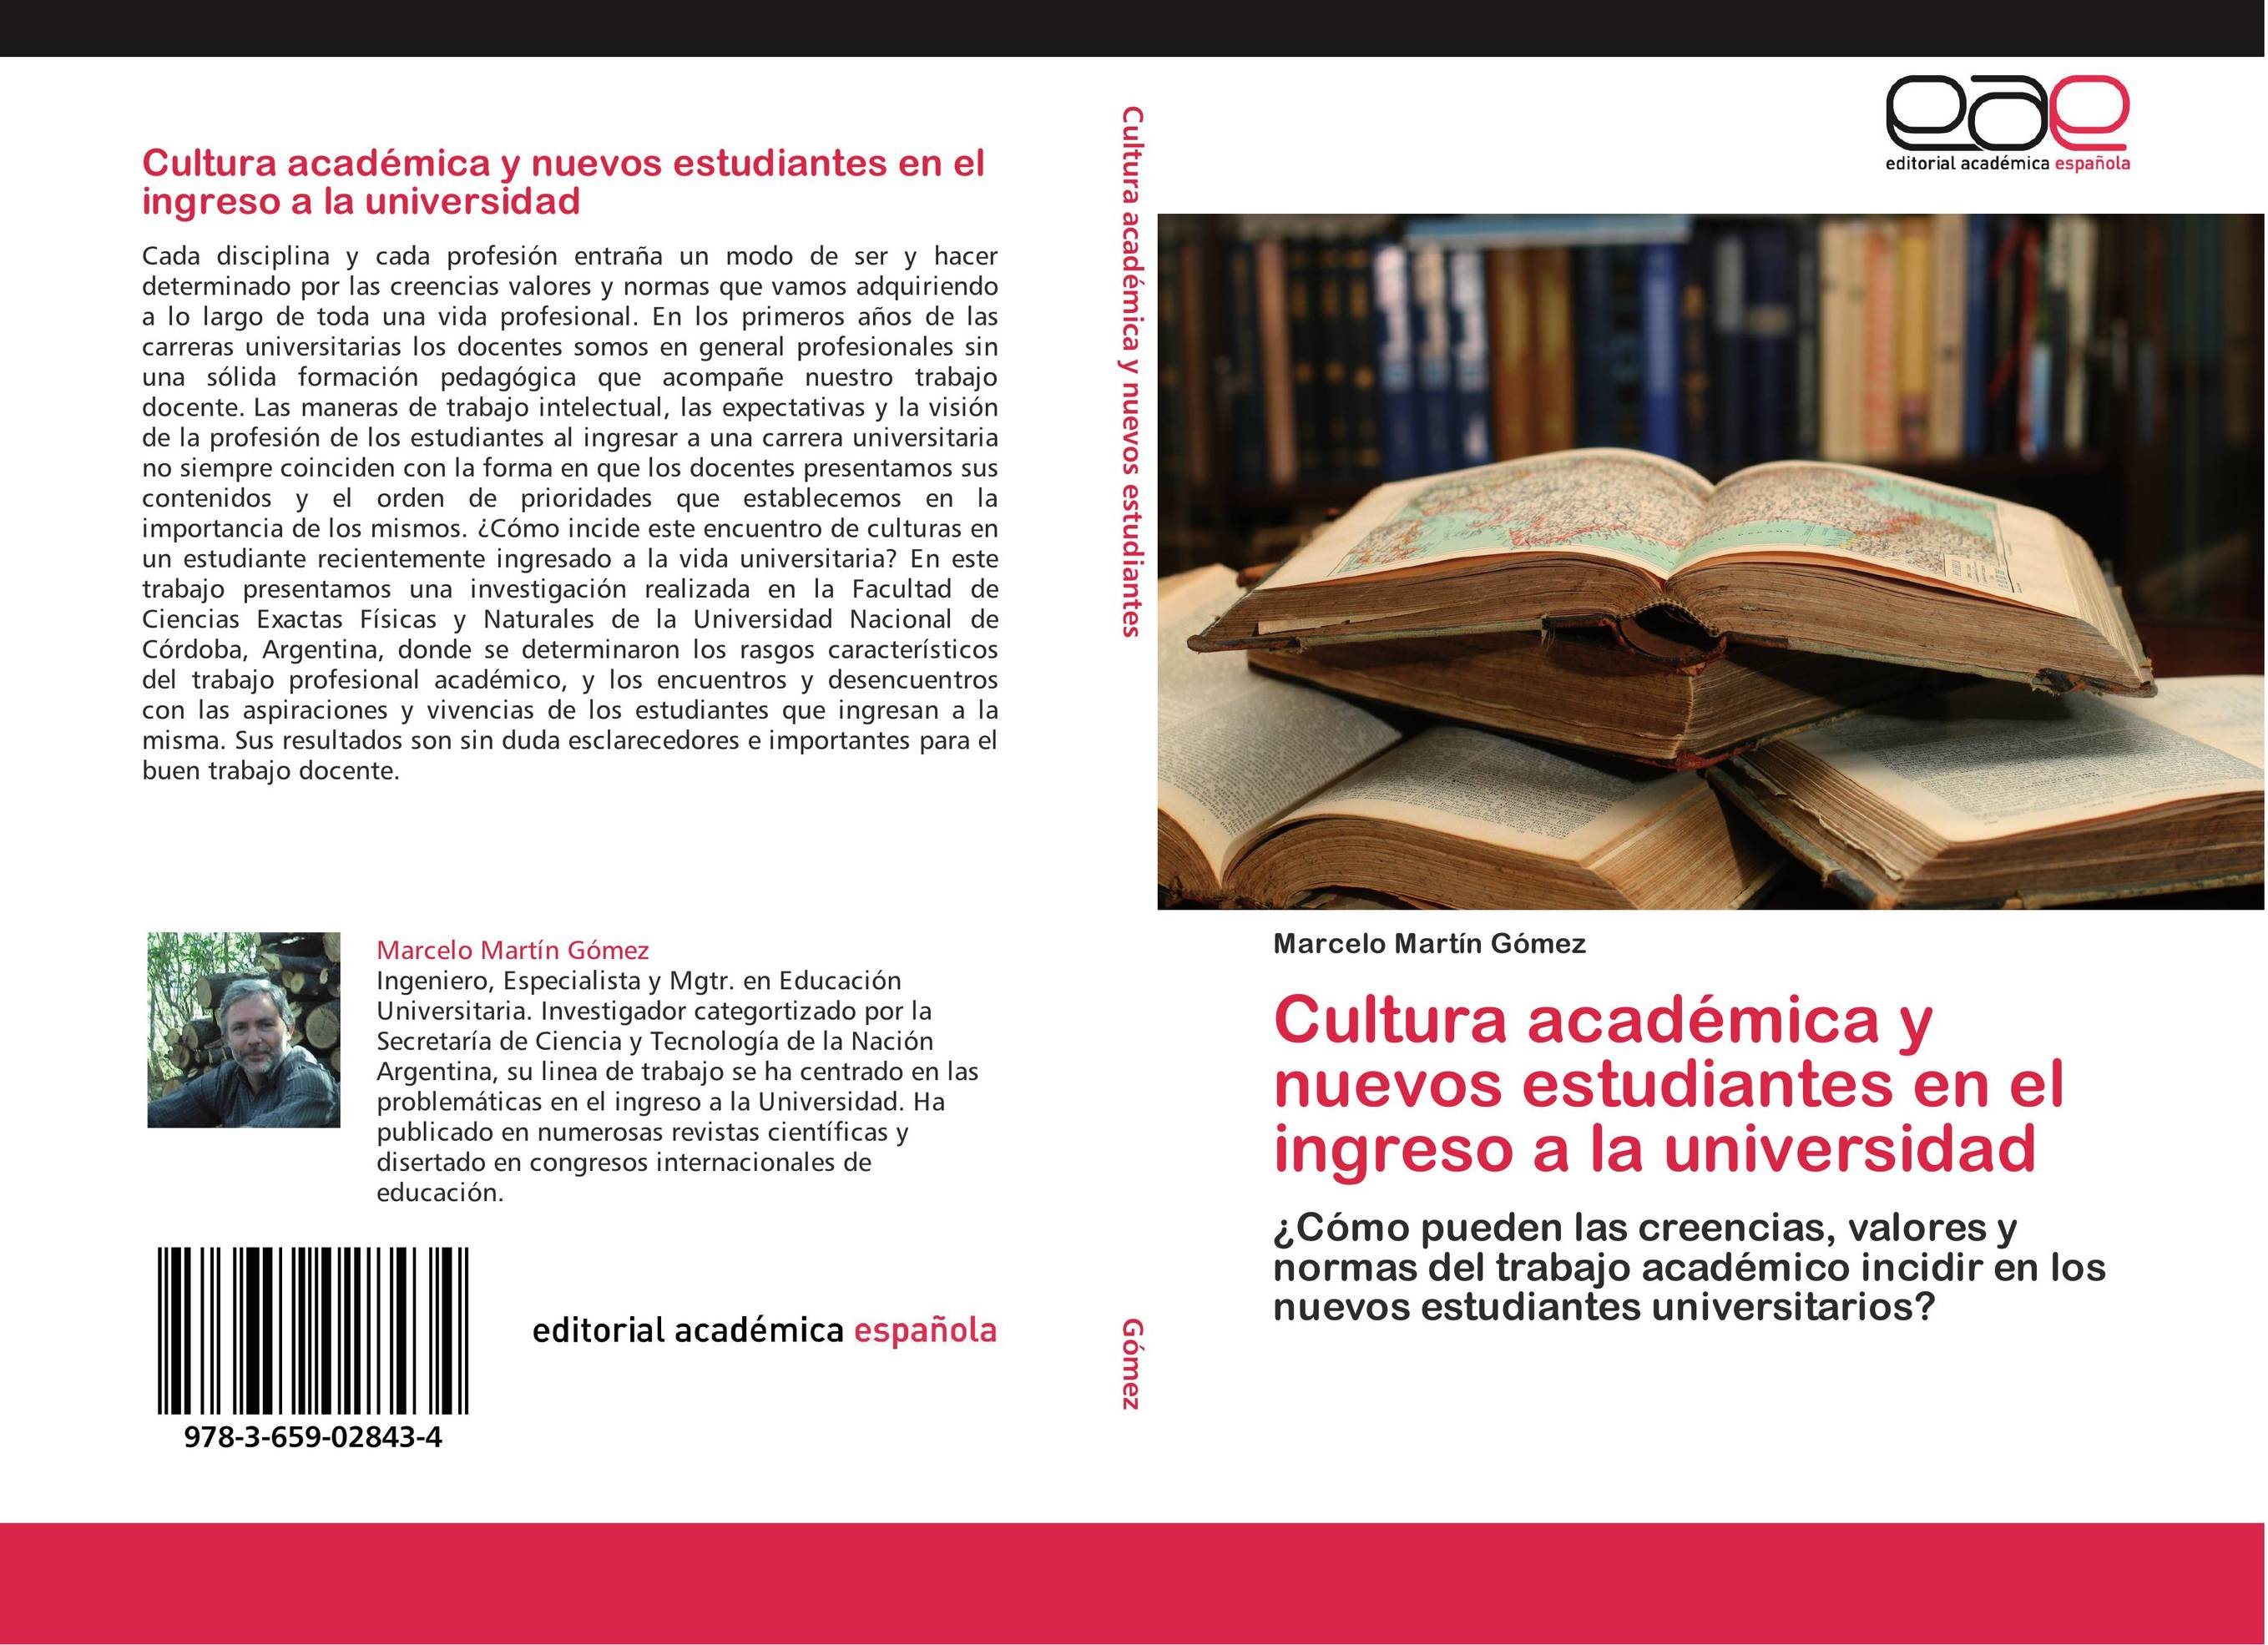 Cultura académica y nuevos estudiantes en el ingreso a la universidad